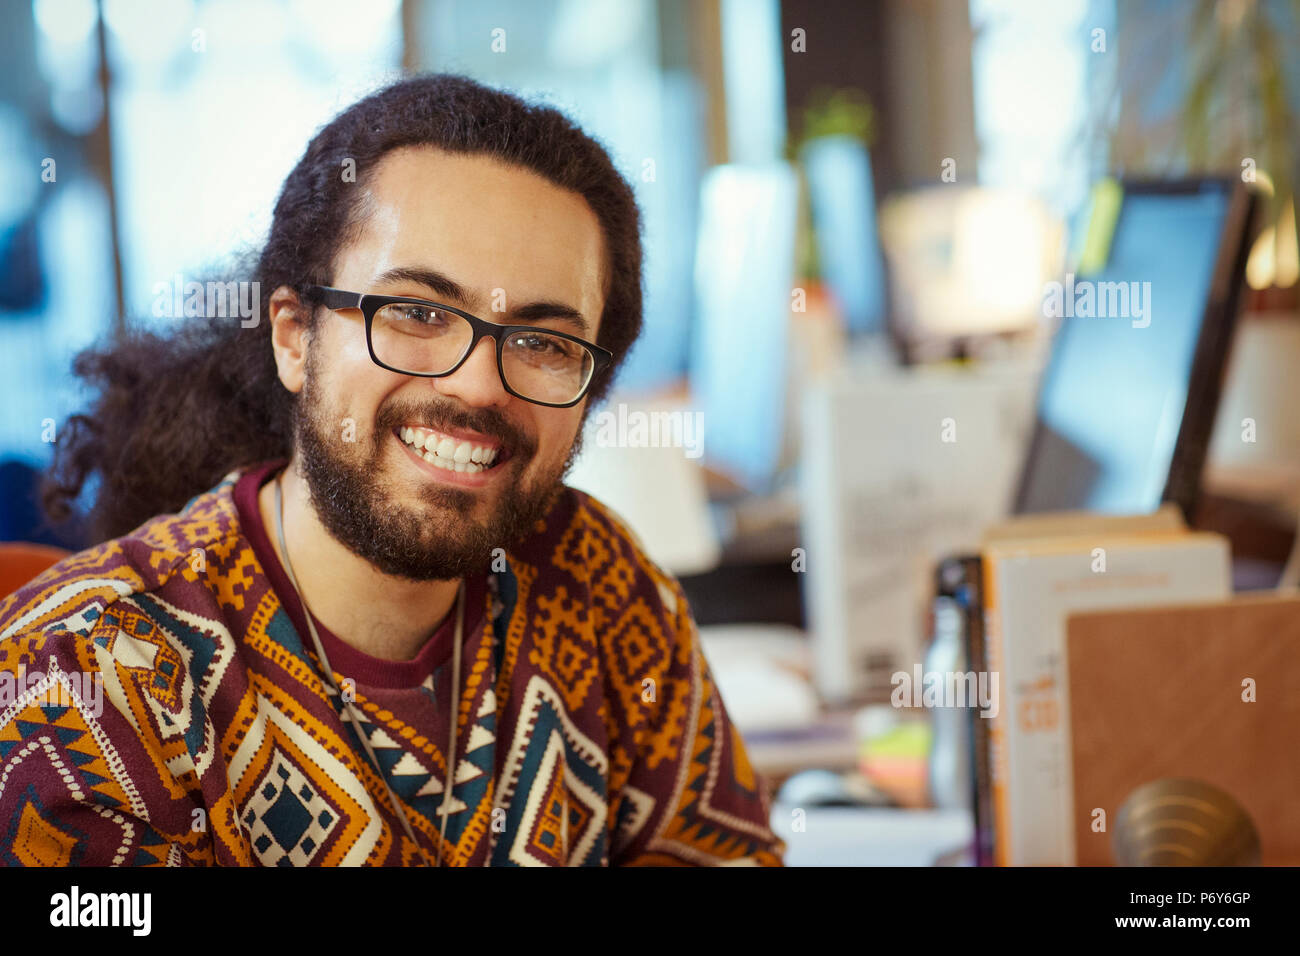 Portrait smiling, confident creative businessman Stock Photo